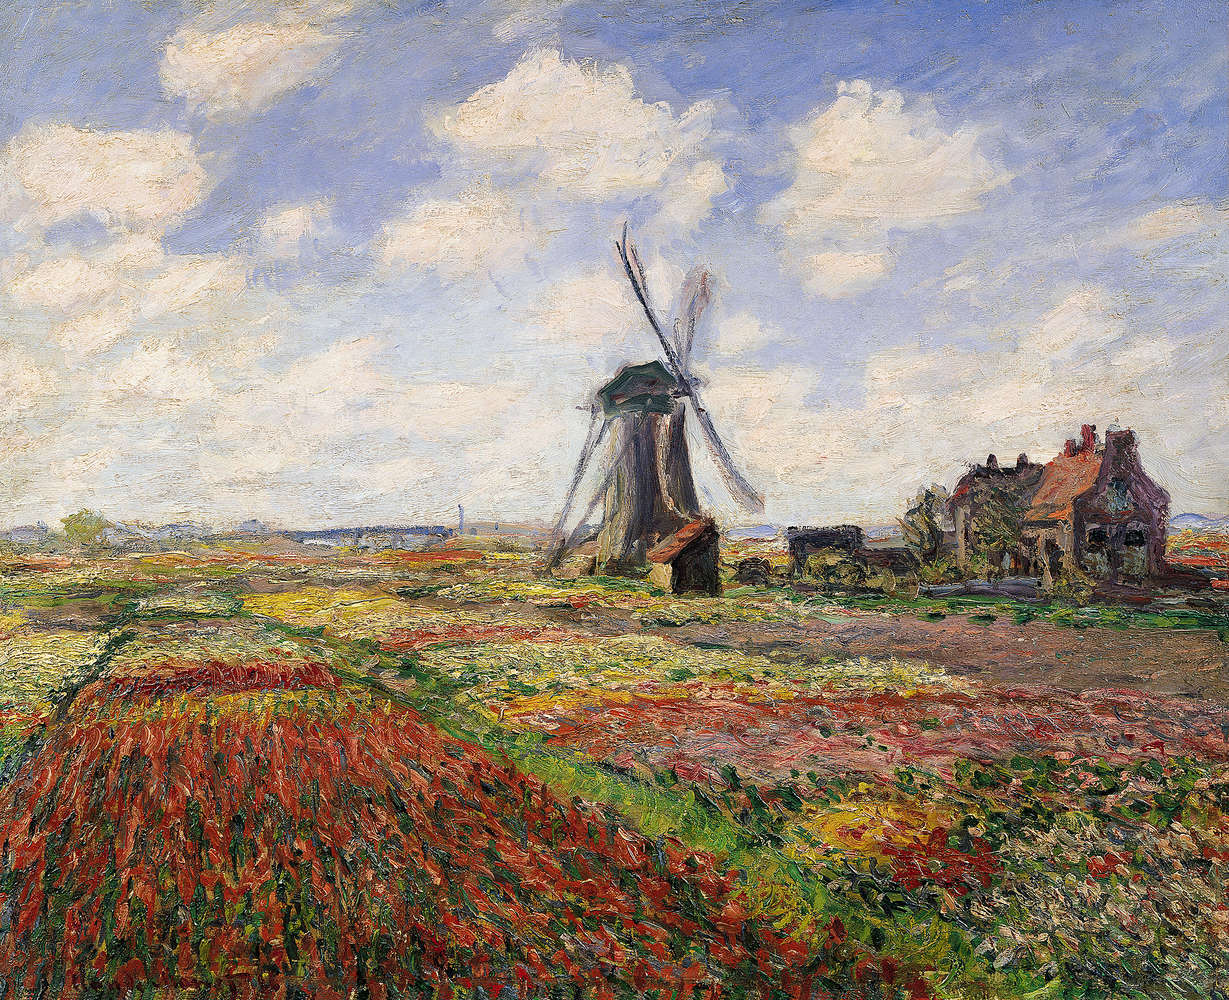             Papier peint panoramique "Champs de tulipes avec le moulin à vent de Rijnsburg" de Claude Monet
        